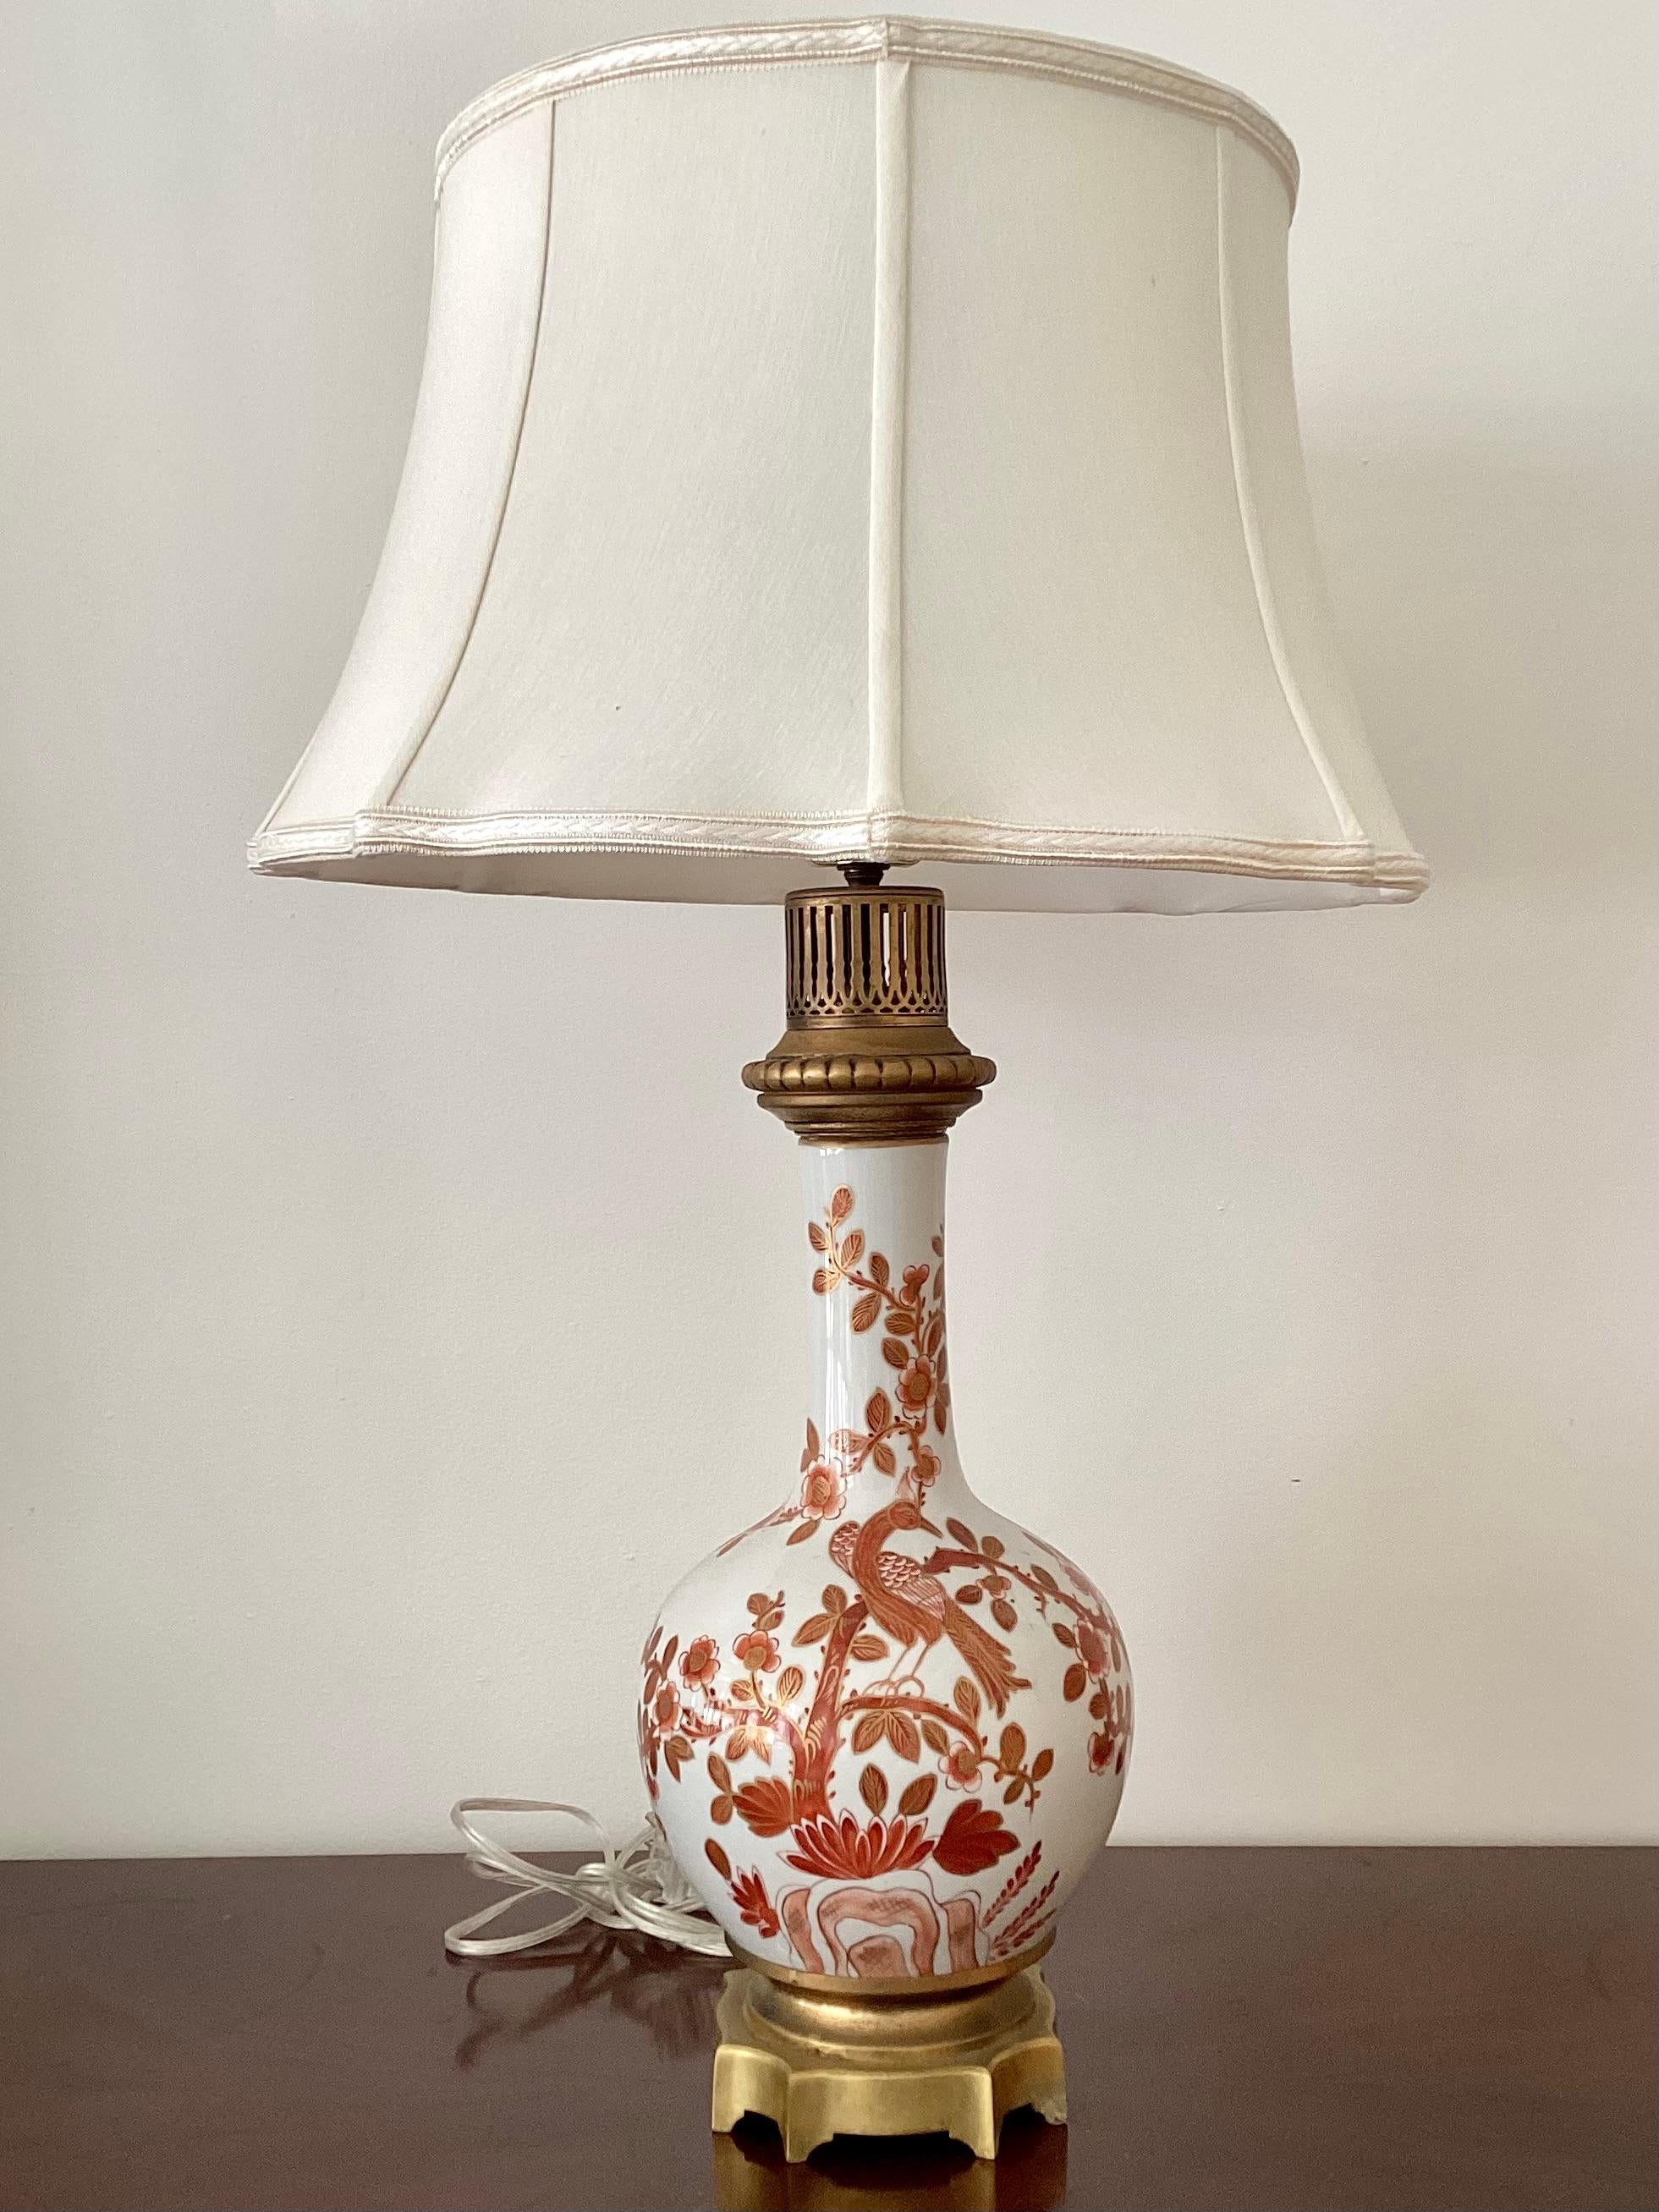 Lampe asiatique vintage décorative avec une scène de nature d'arbres et d'oiseaux. Cette lampe comprend une base robuste en bronze doré. Ajoutez cette magnifique lampe à votre collection de chinoiseries.